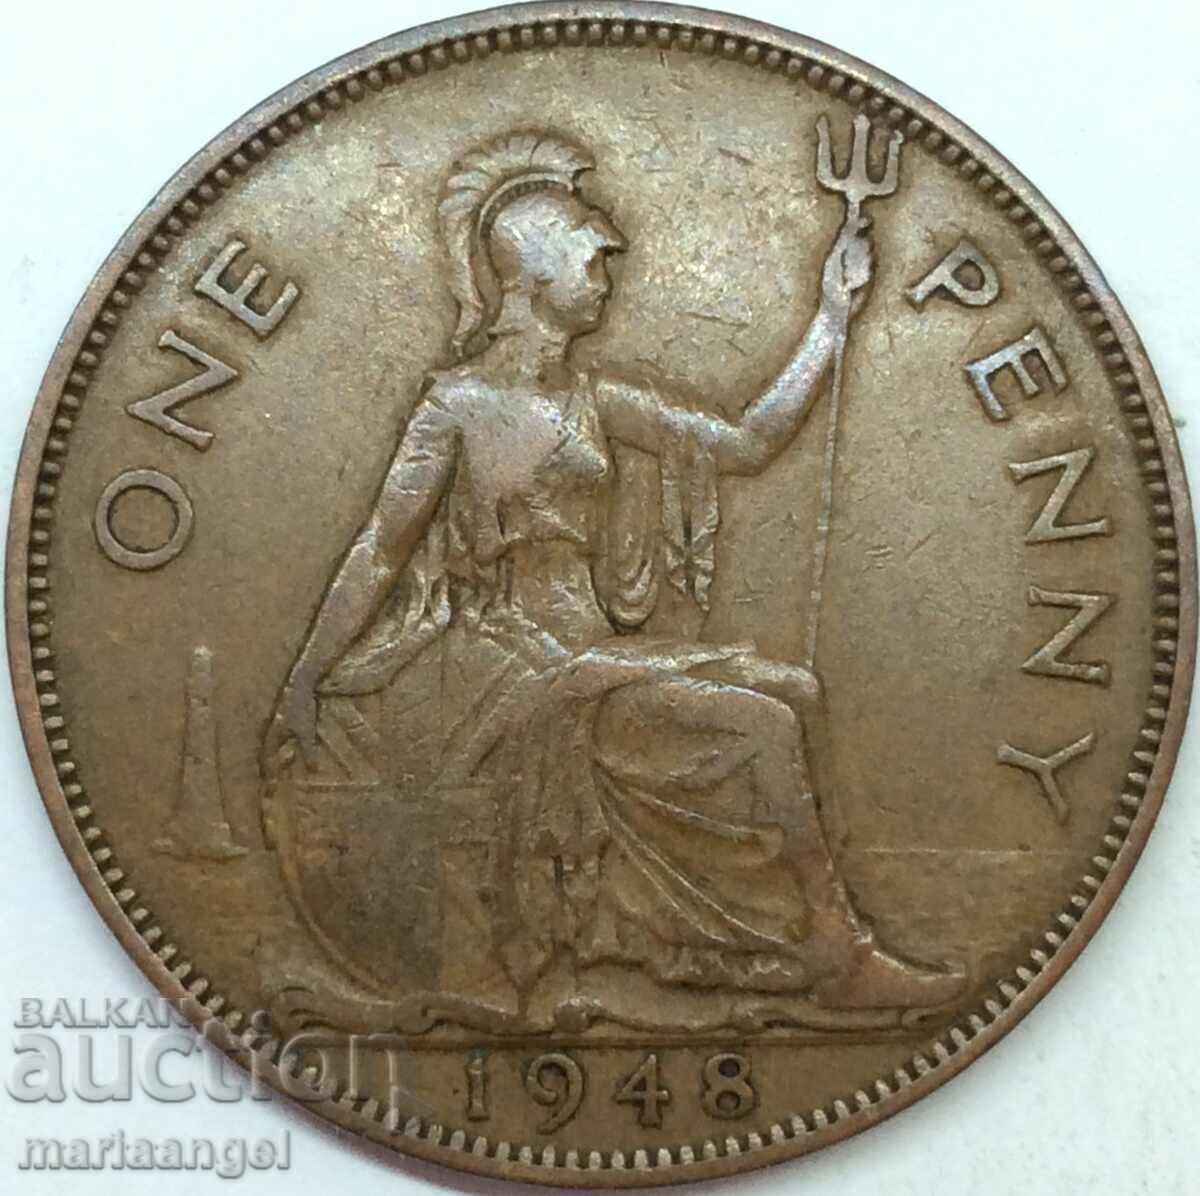 Great Britain 1 Penny 1948 George VI Bronze